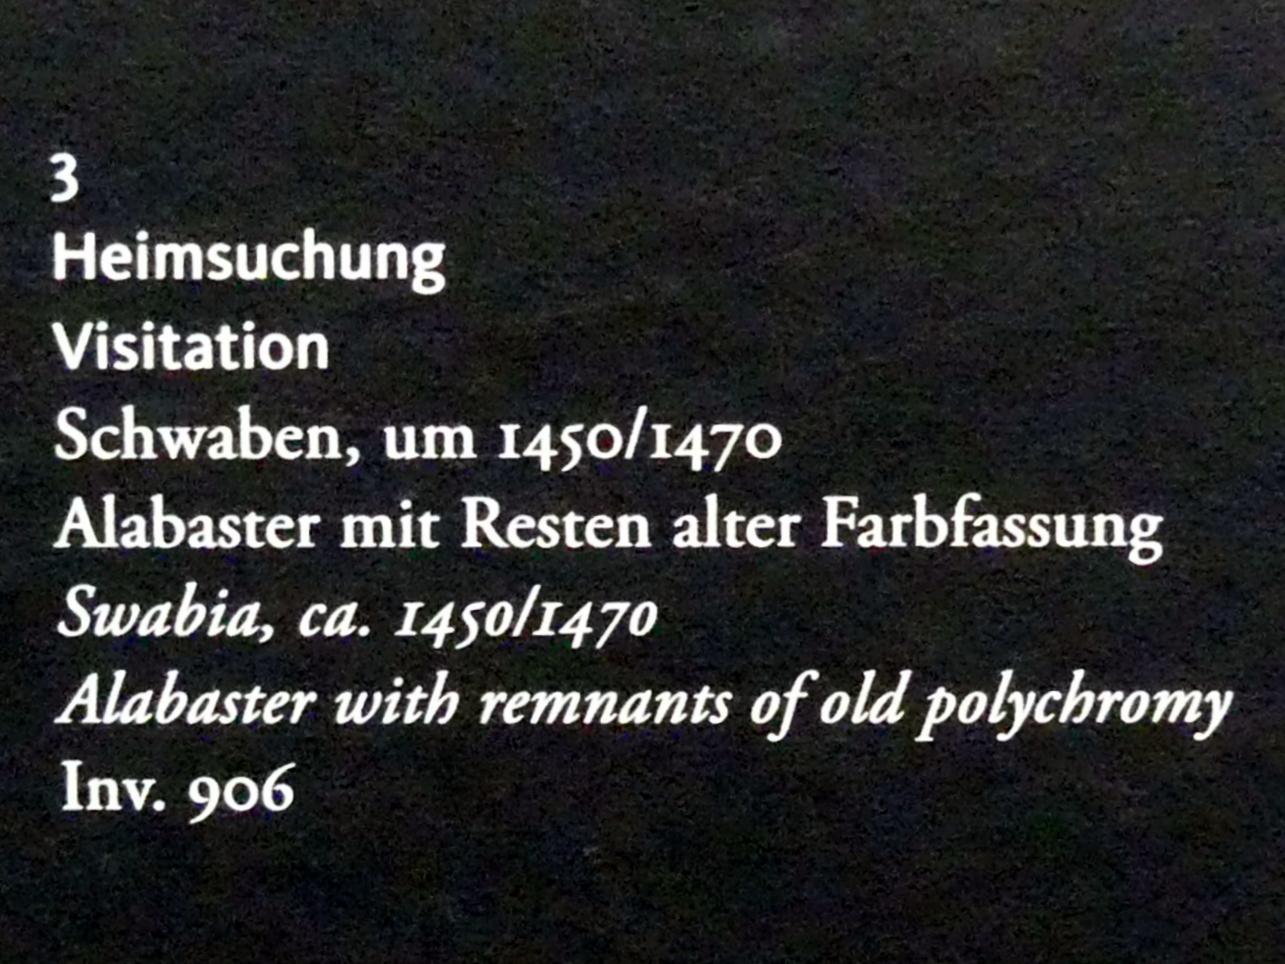 Heimsuchung, Frankfurt am Main, Liebieghaus Skulpturensammlung, Mittelalter 3 - große Kunst im kleinen Format, um 1450–1470, Bild 2/2